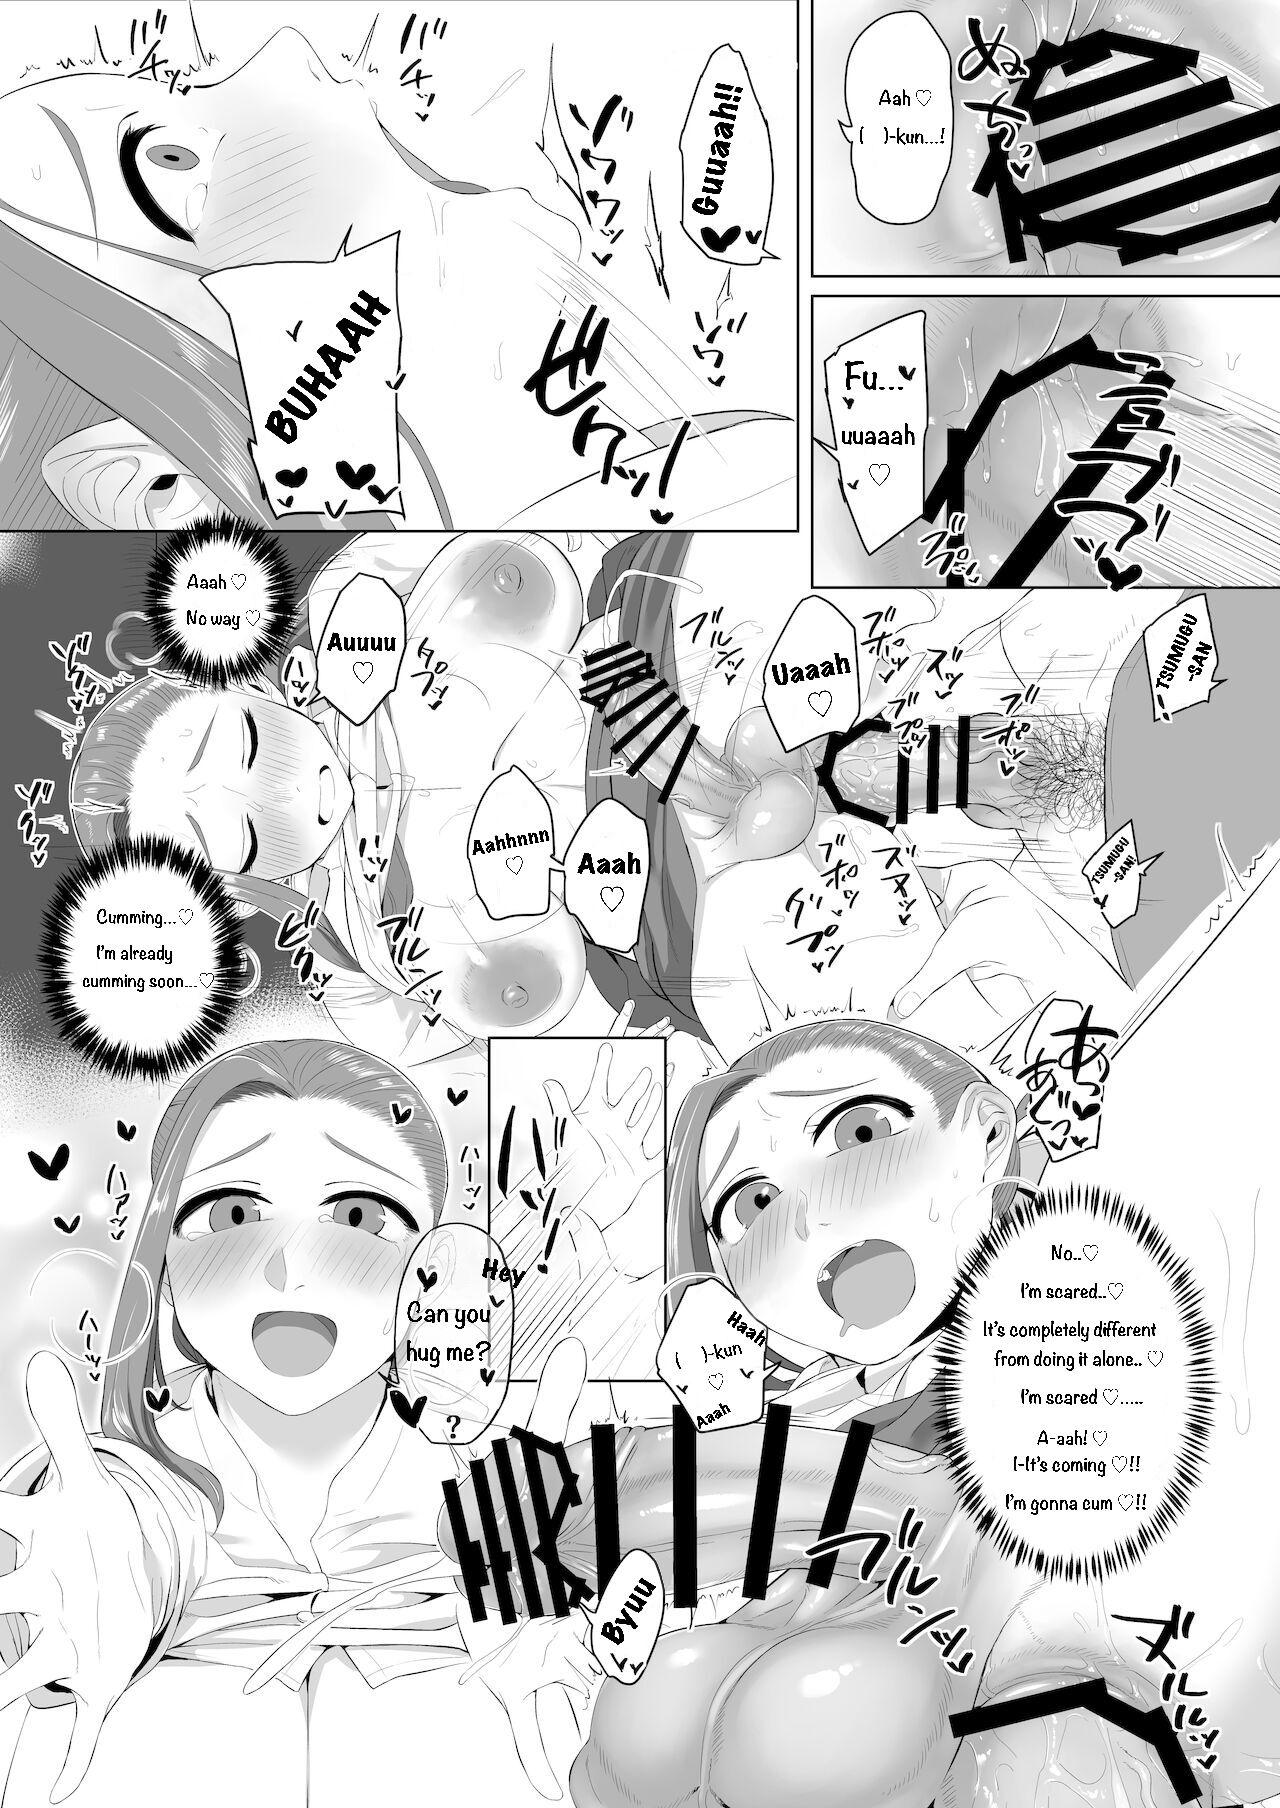 Chaturbate Shemale & Mesu Danshi Goudou-Shi SHEMALE C' S HAVEN 2 8teenxxx - Page 5